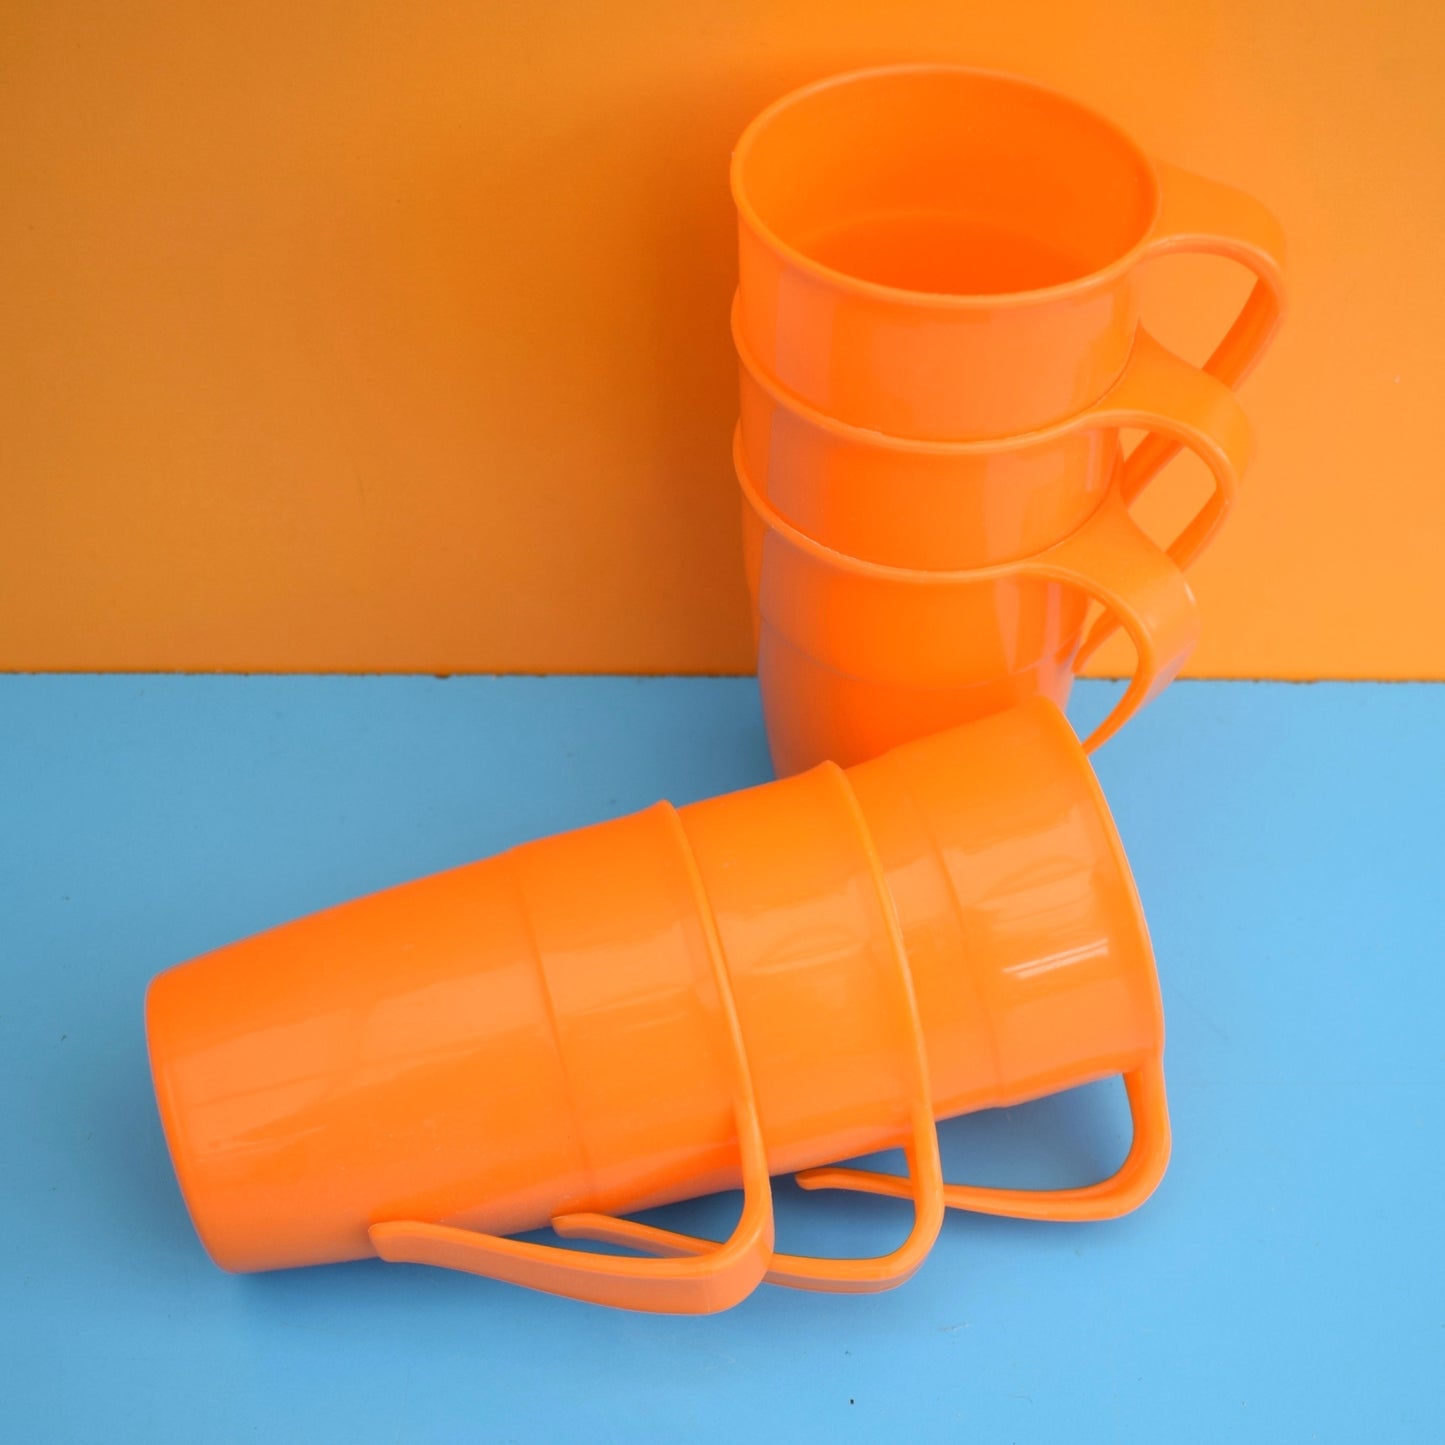 Vintage 1970s Stacking Plastic Mugs -Orange